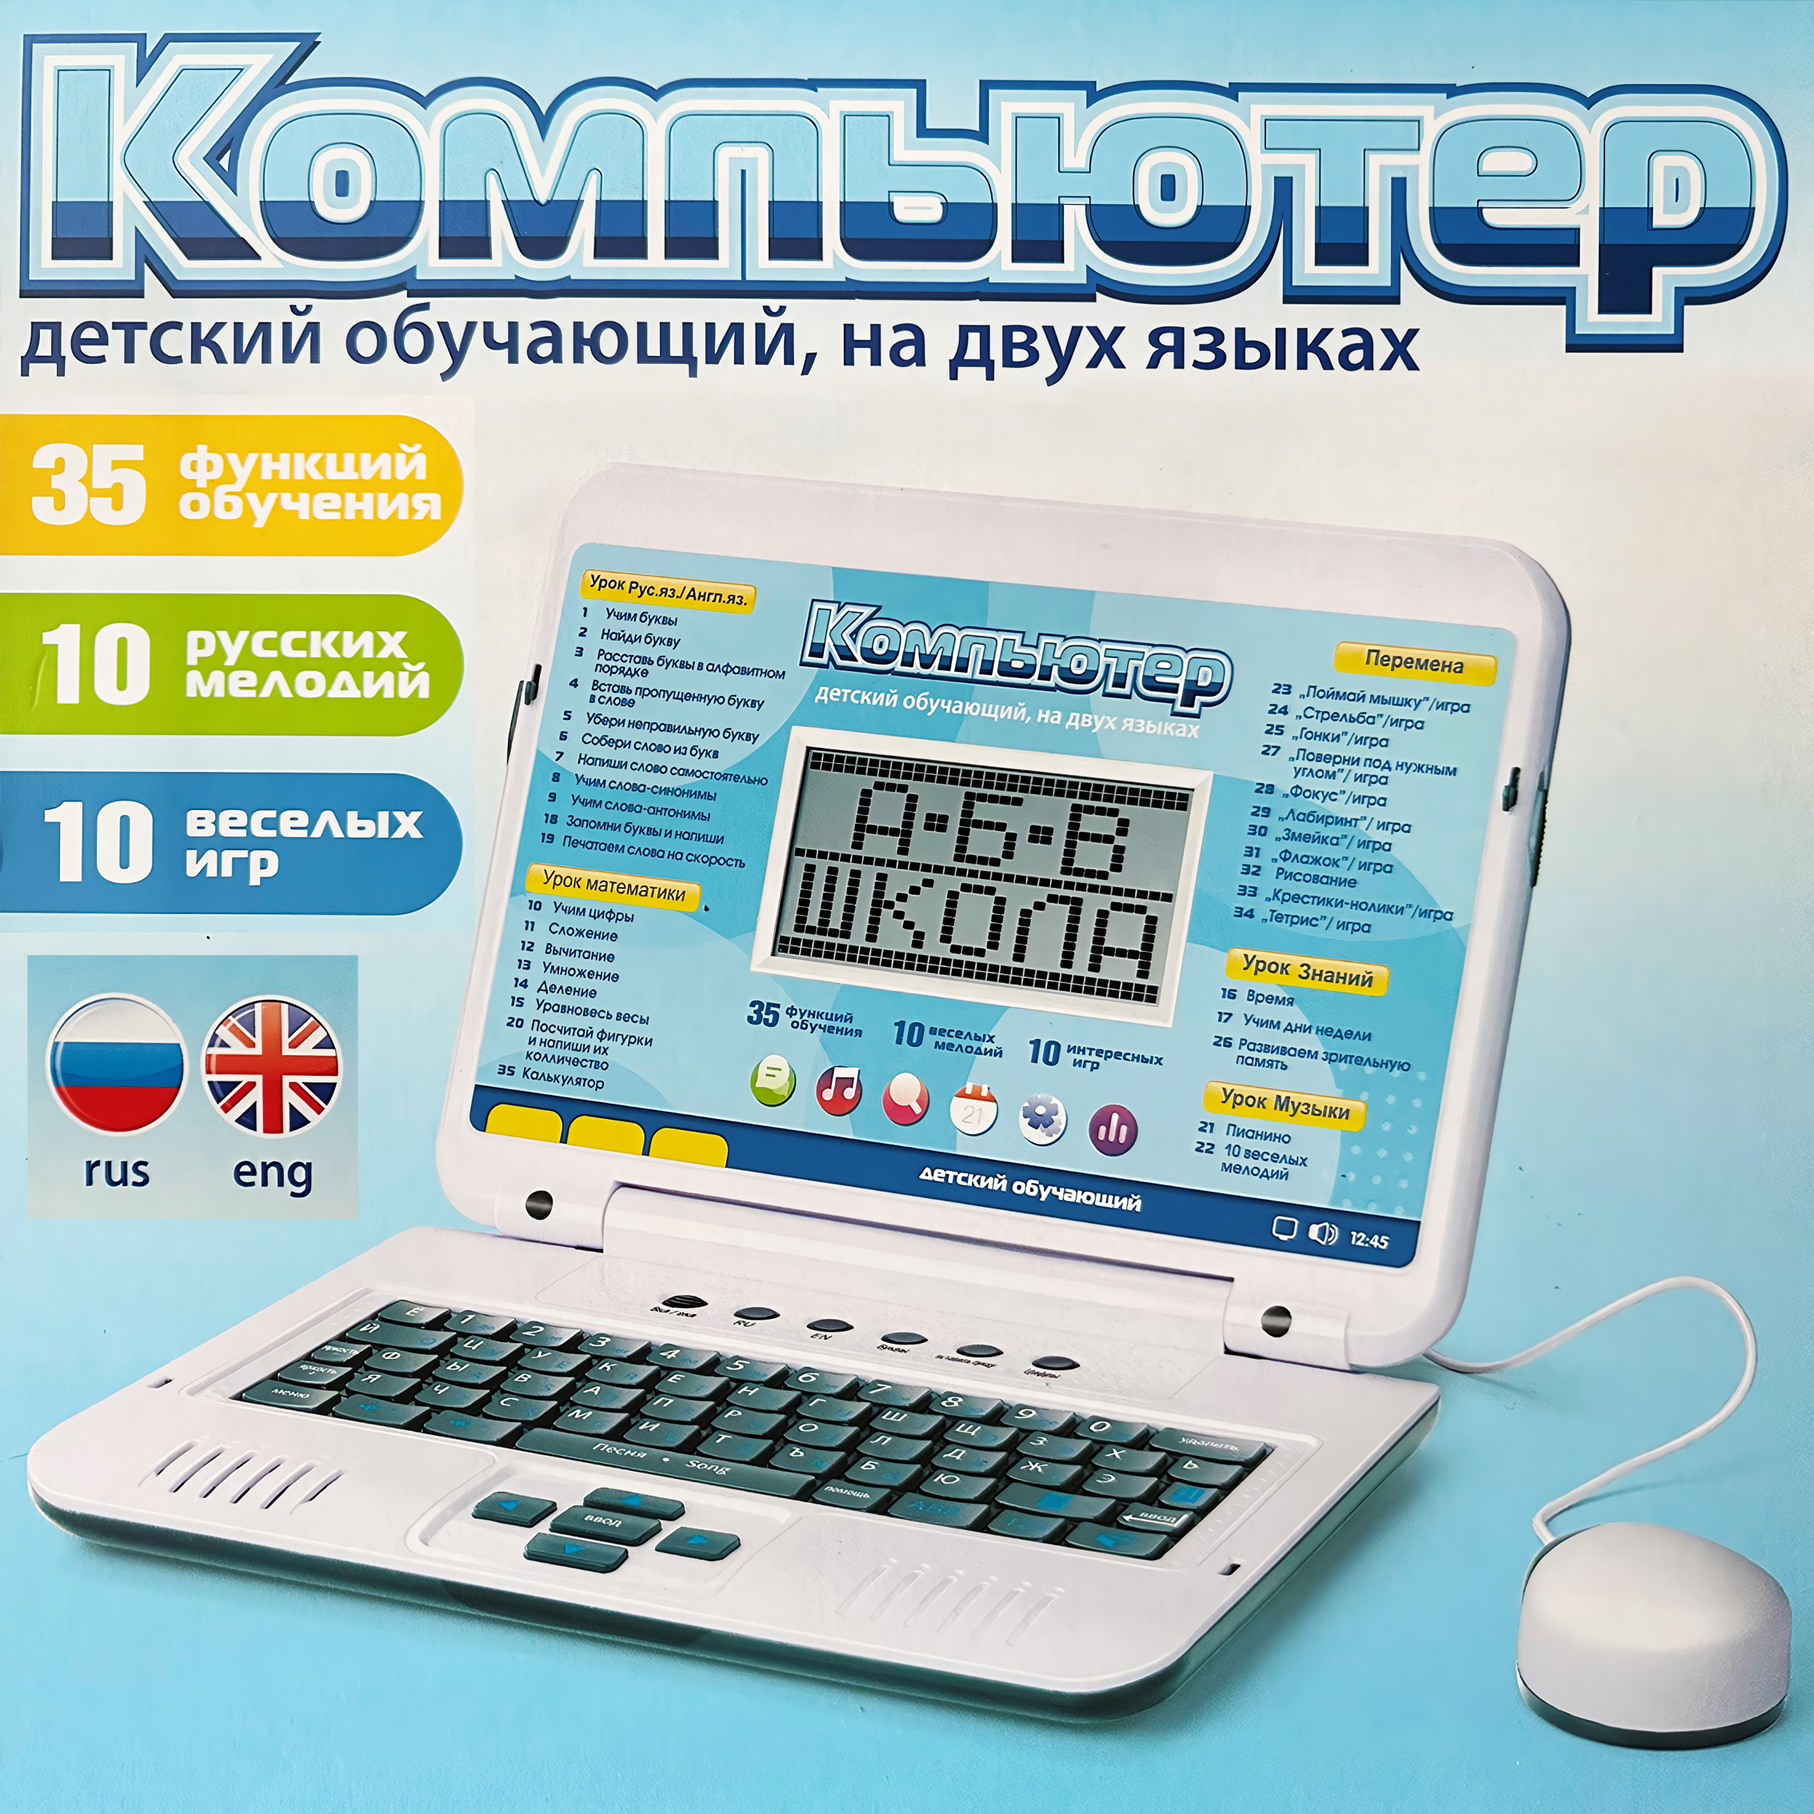 Детский обучающий компьютер ноутбук с мышкой 36 функций 9 игр 11 мелодий русский и английский язык учит алфавиту считать печатать развивает речь Розовый